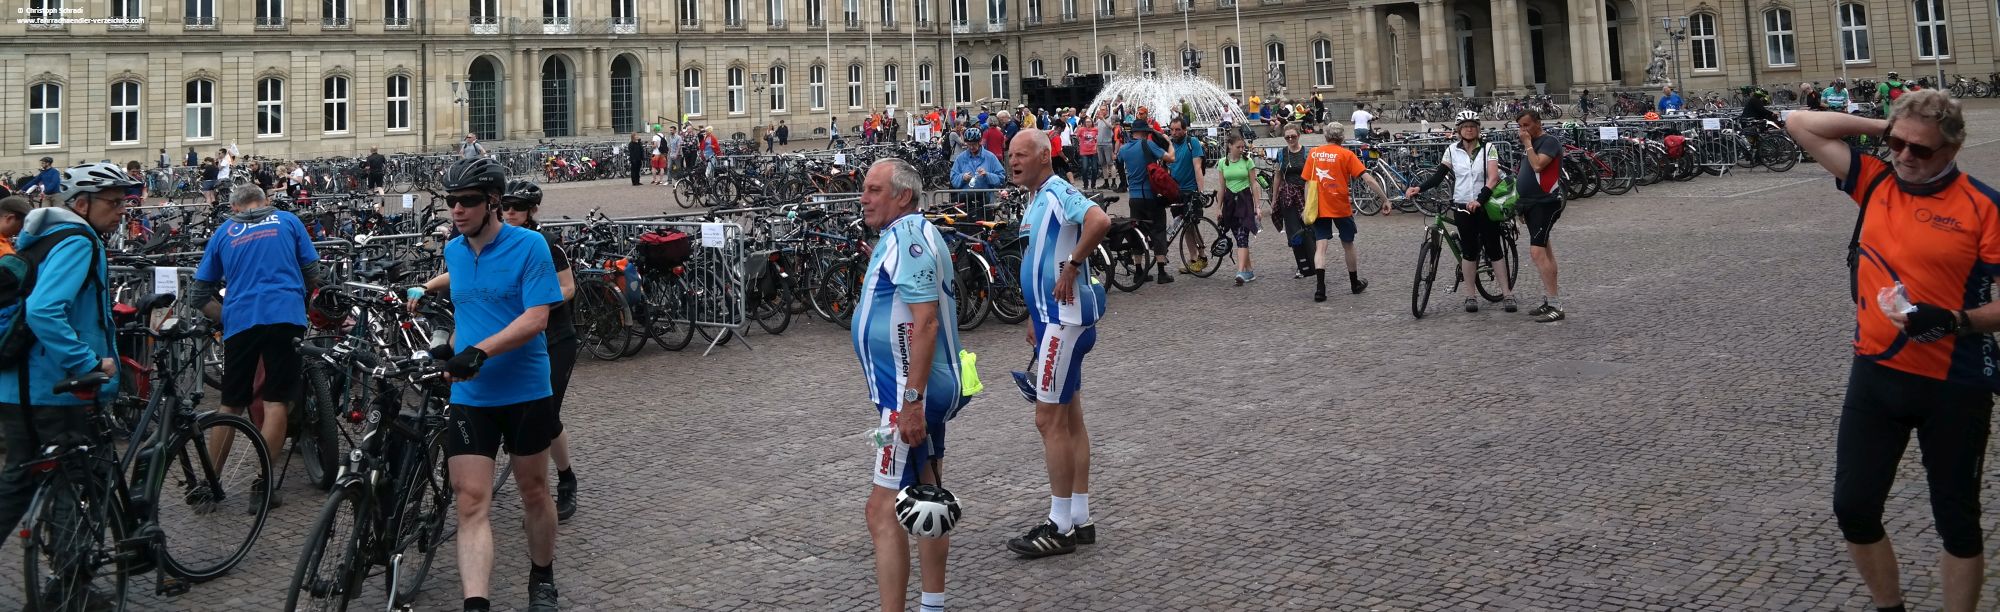 So viele Fahrräder sieht der Schlossplatz sonst eher selten - die provisorischen Fahrradabstellplätze waren nach der Ankunft am Schlossplatz gut gefüllt